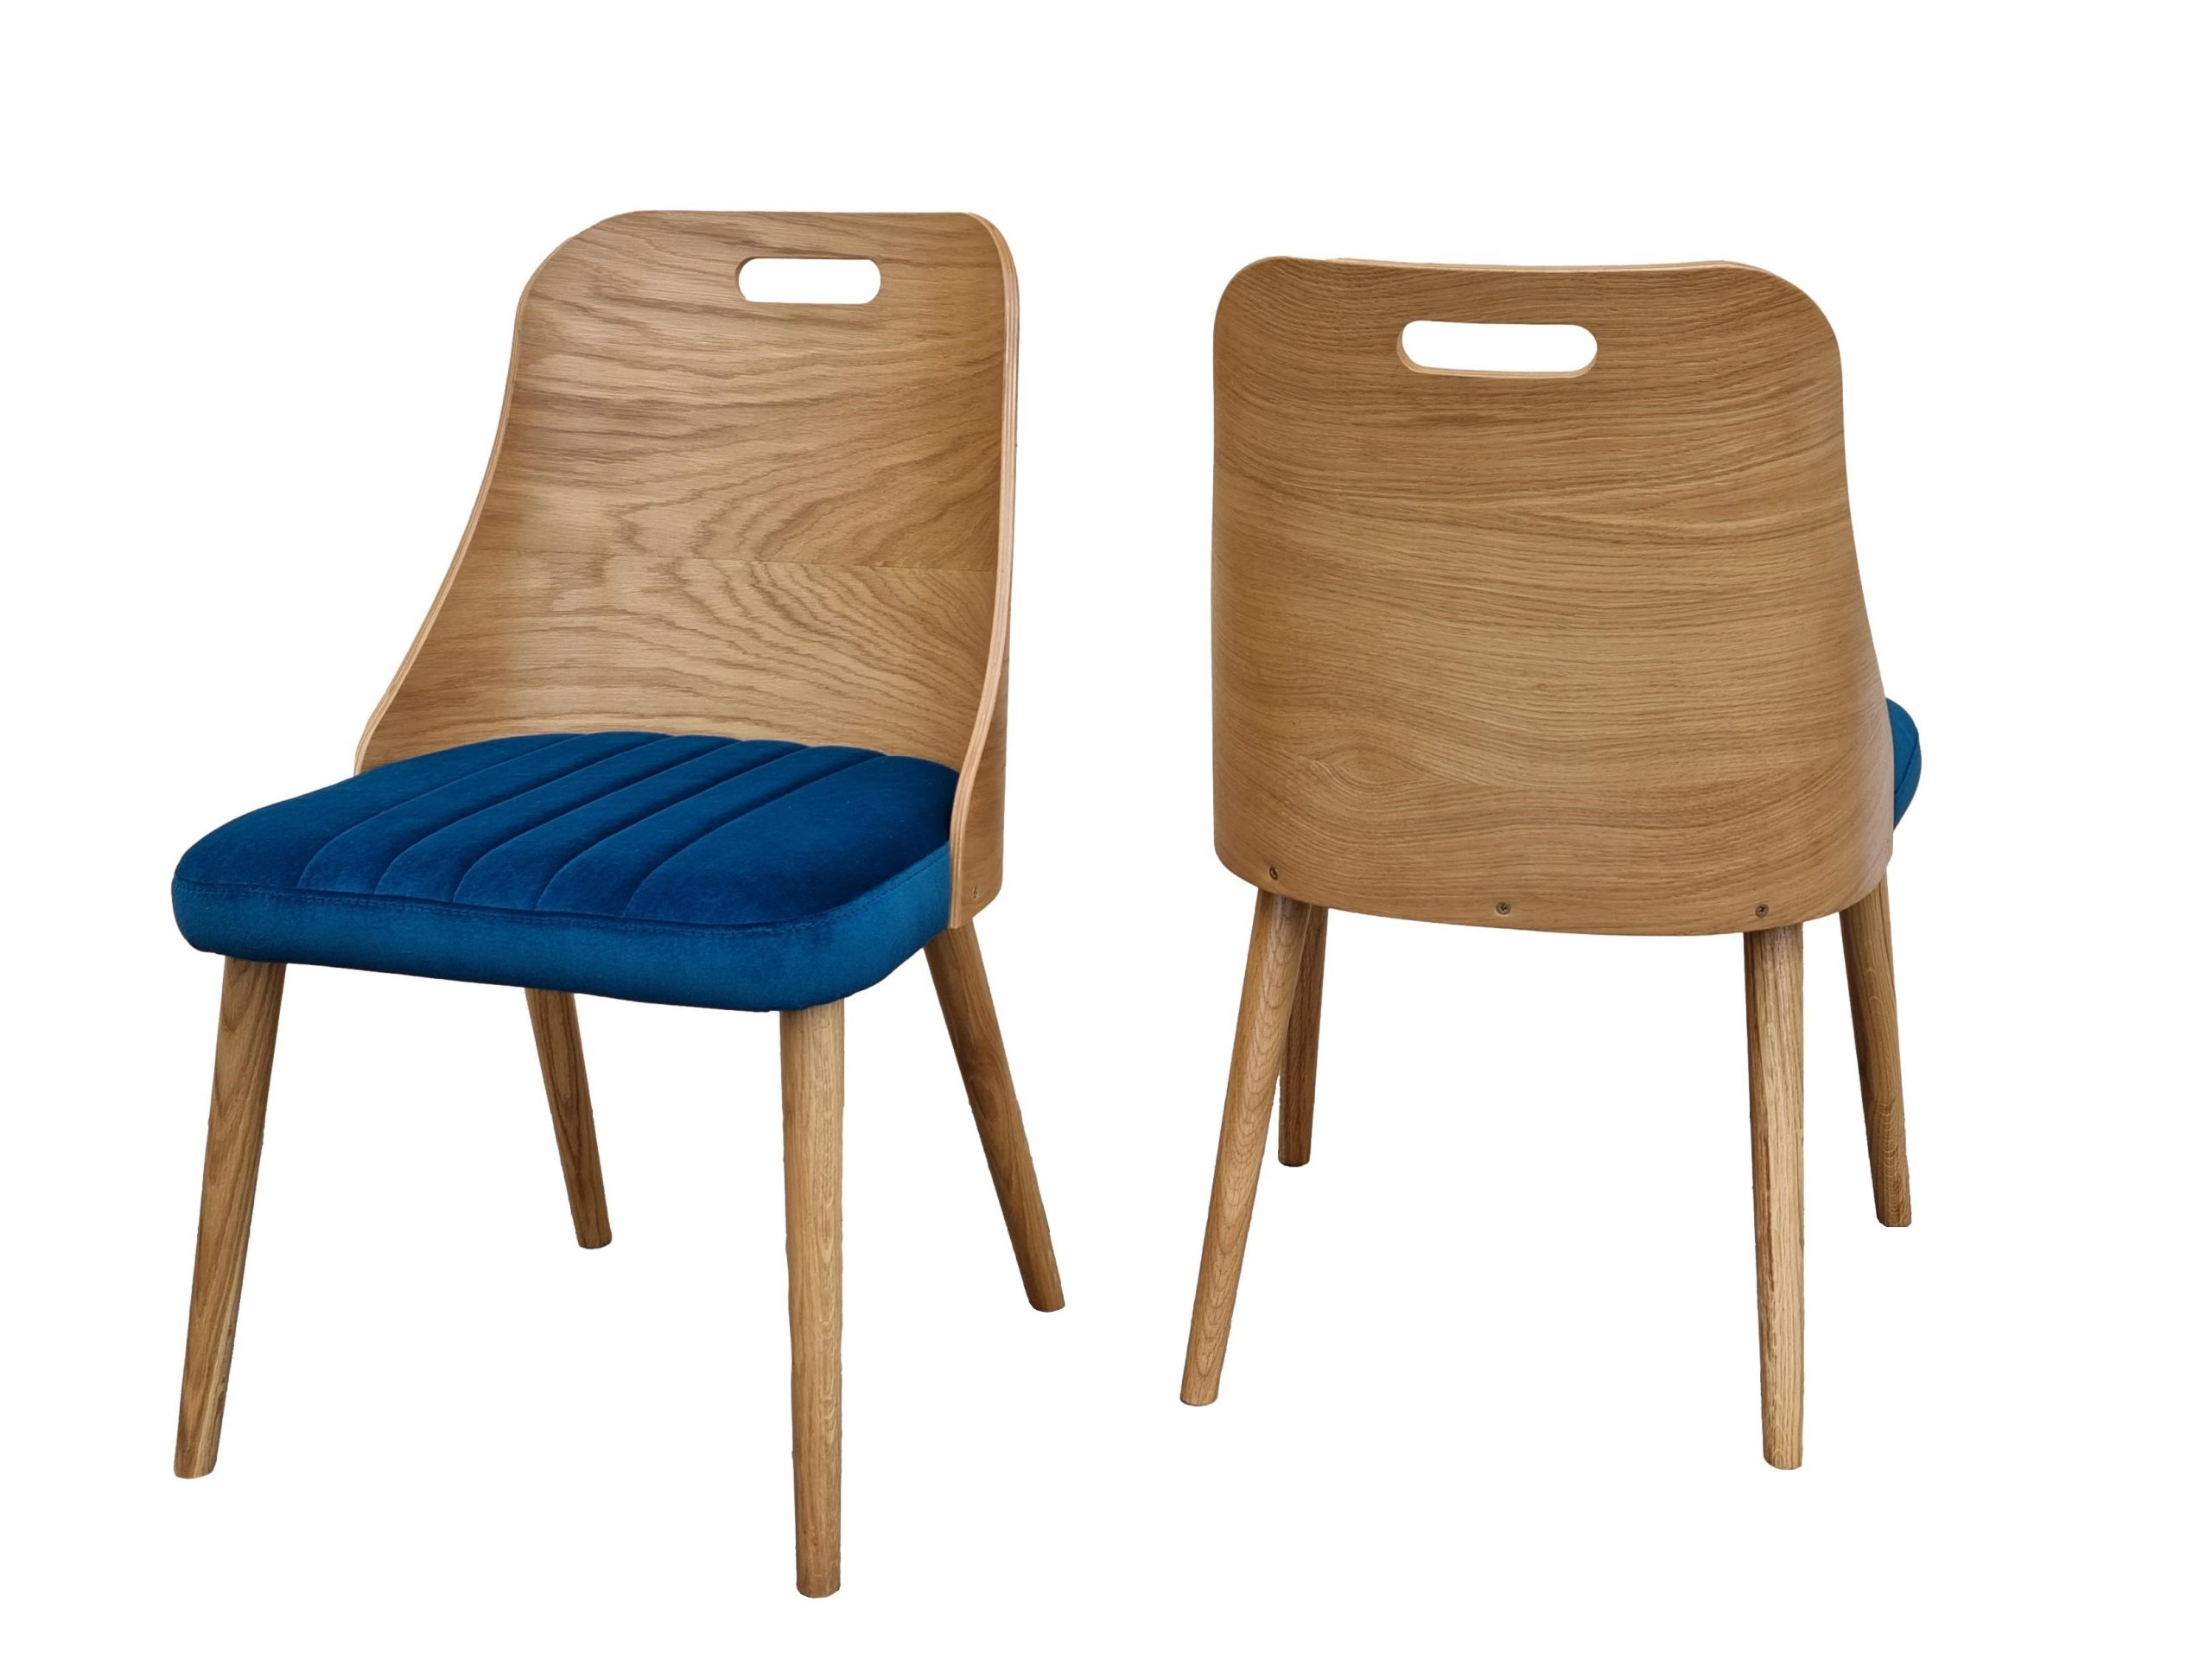 Krzesło dębowe drewniane tapicerowane nowoczesne Muszelka